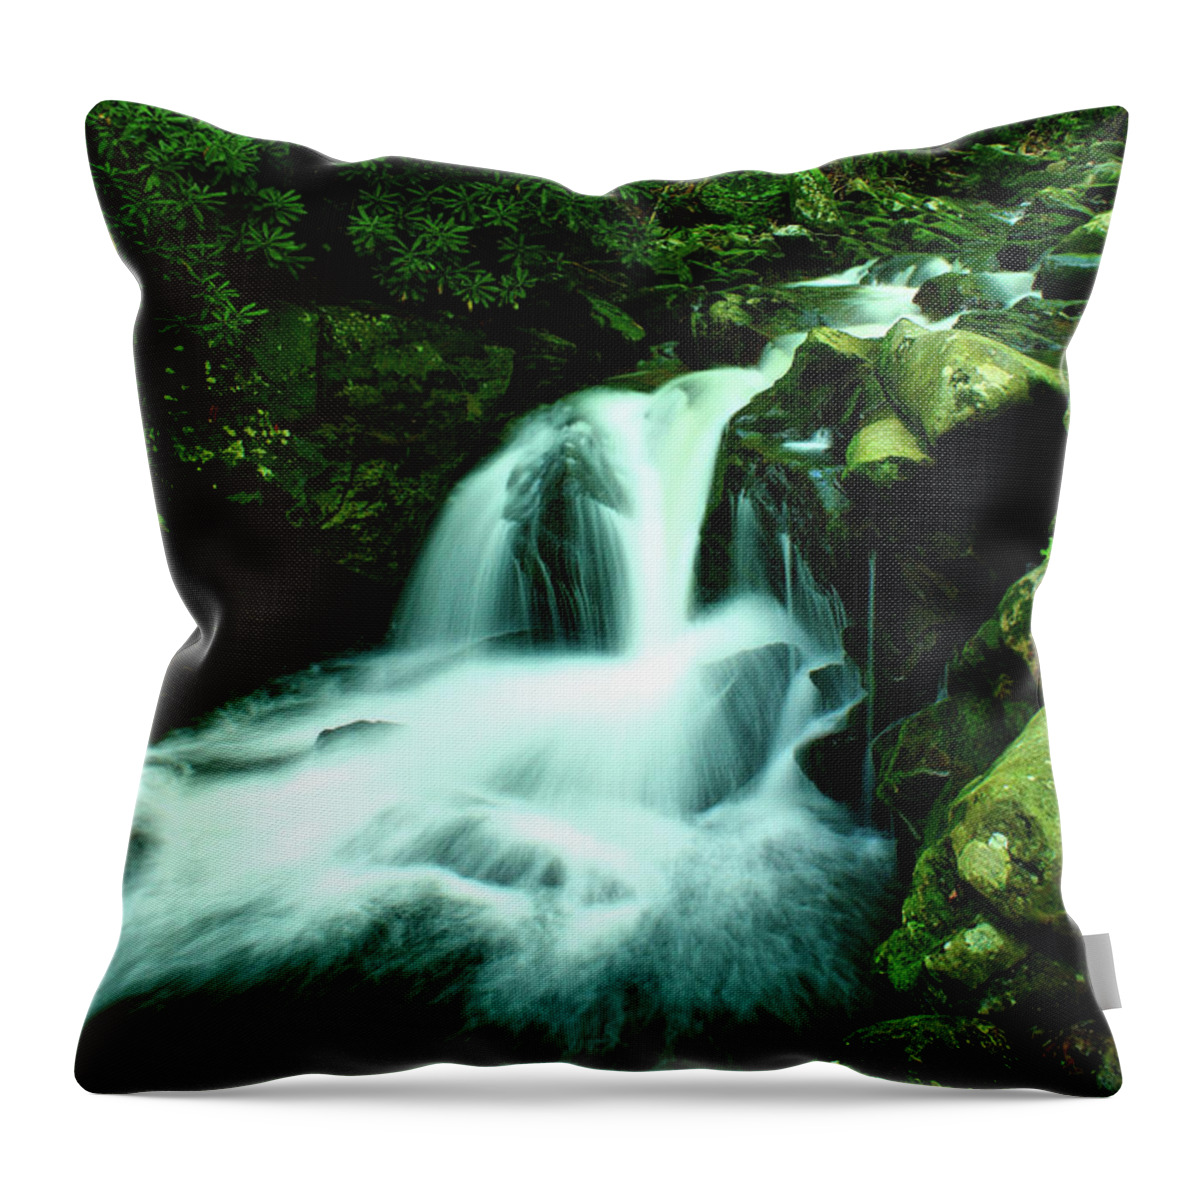 Art Prints Throw Pillow featuring the photograph Upper Lynn Camp Prong Cascades by Nunweiler Photography